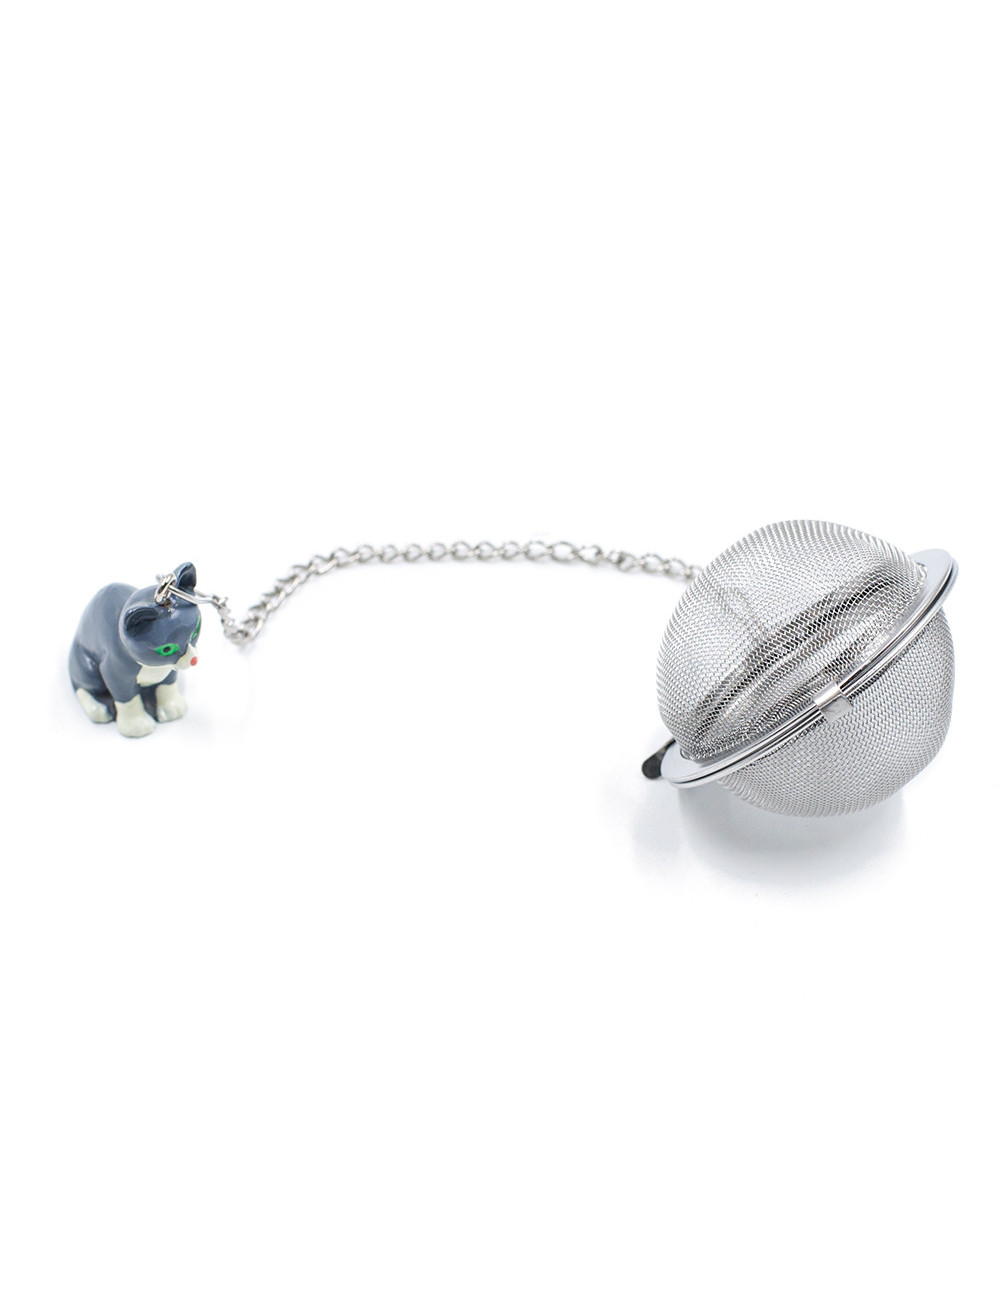 Infusore a sfera Ø 5 cm in acciaio inox con ciondolo colorato - La Pianta del Tè acquista online